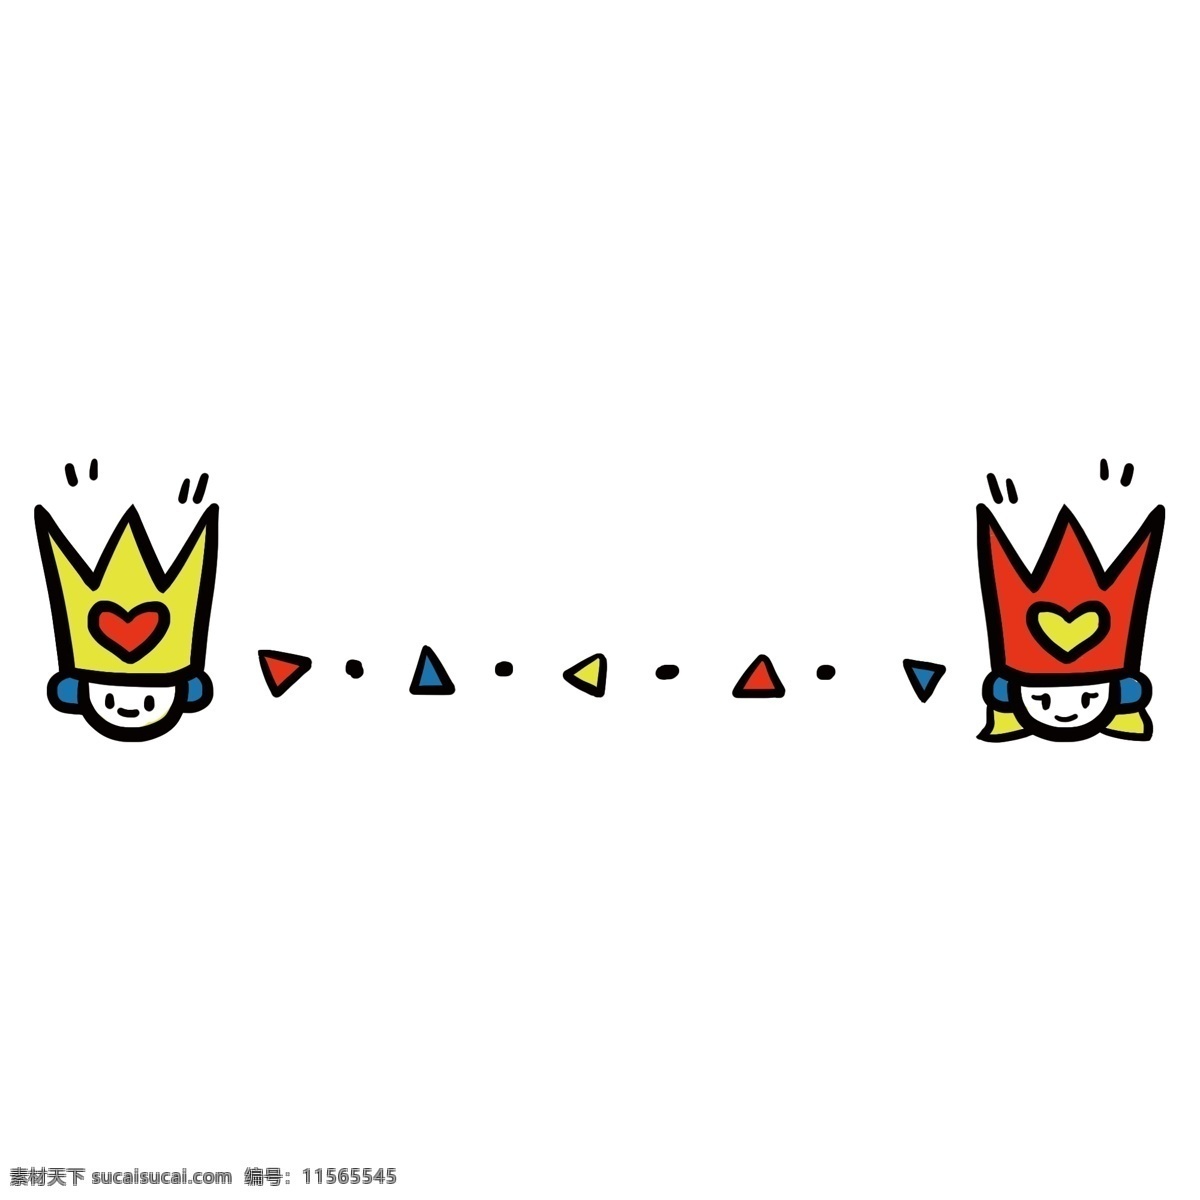 分割线 王冠 小人 边框 红色的王冠 黄色的王冠 卡通插画 卡通边框 分割线边框 小物边框 红色的心形